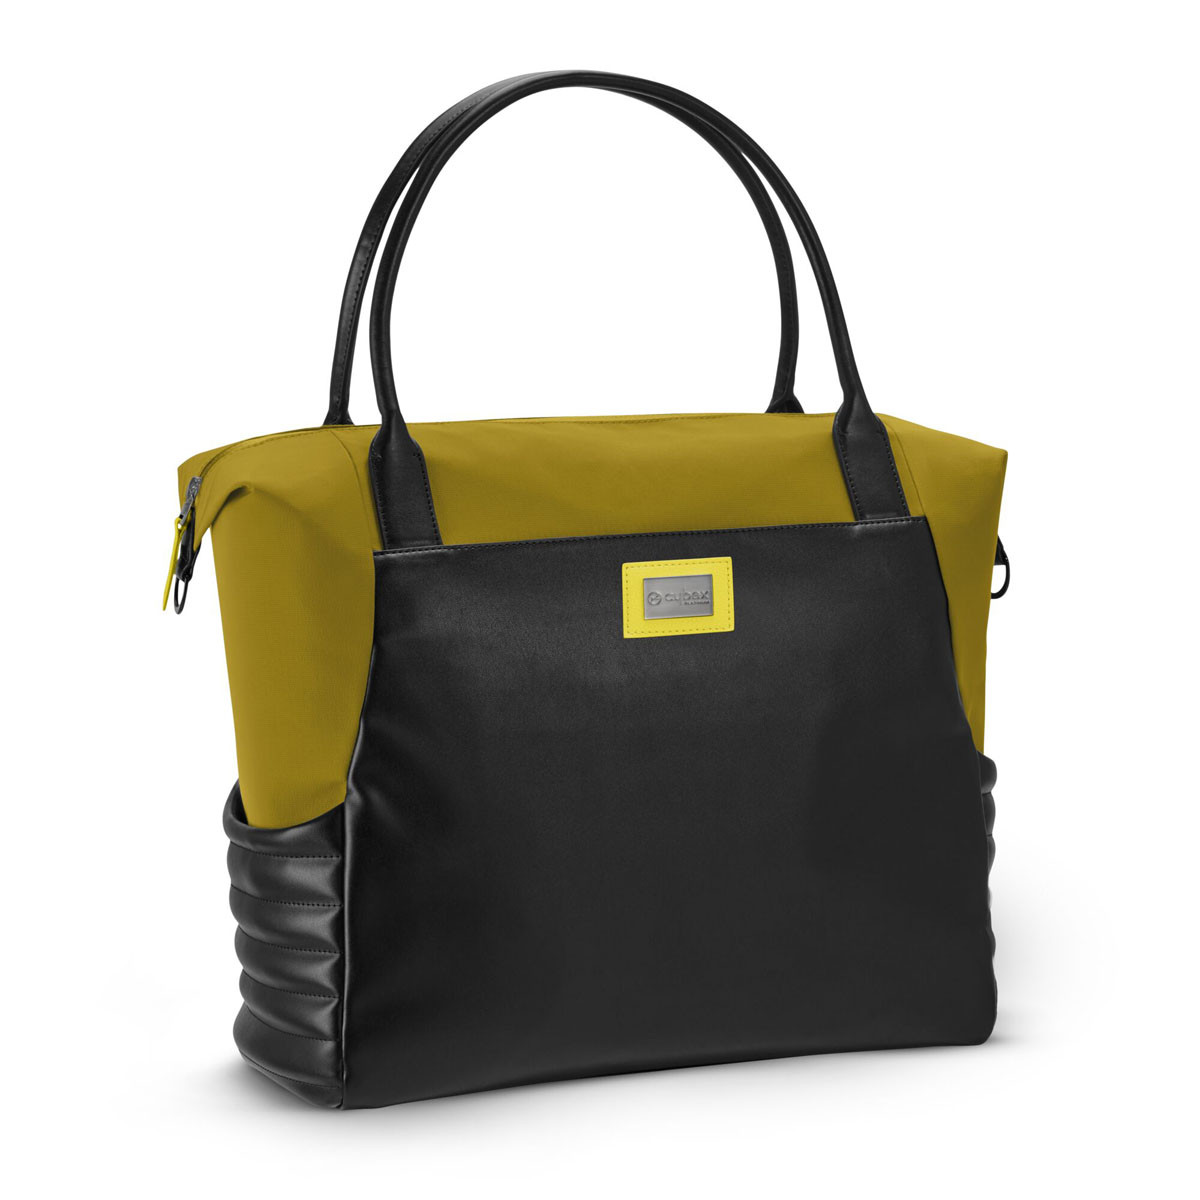 Bolso shopper bag de Cybex en color mustard yellow.